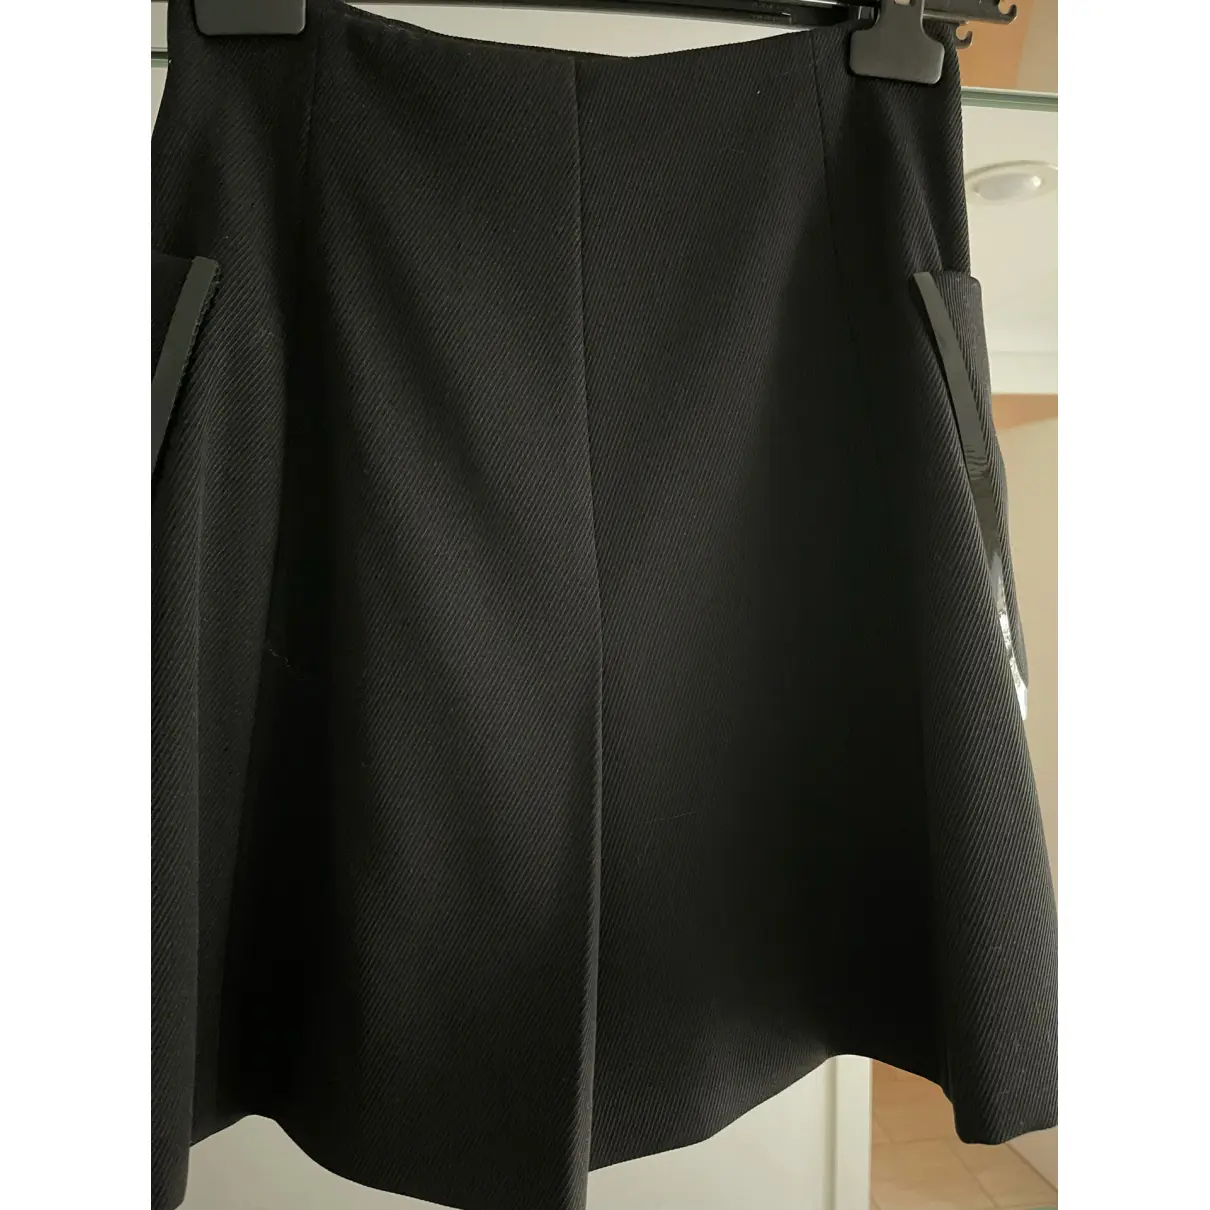 Buy Fendi Wool mini skirt online